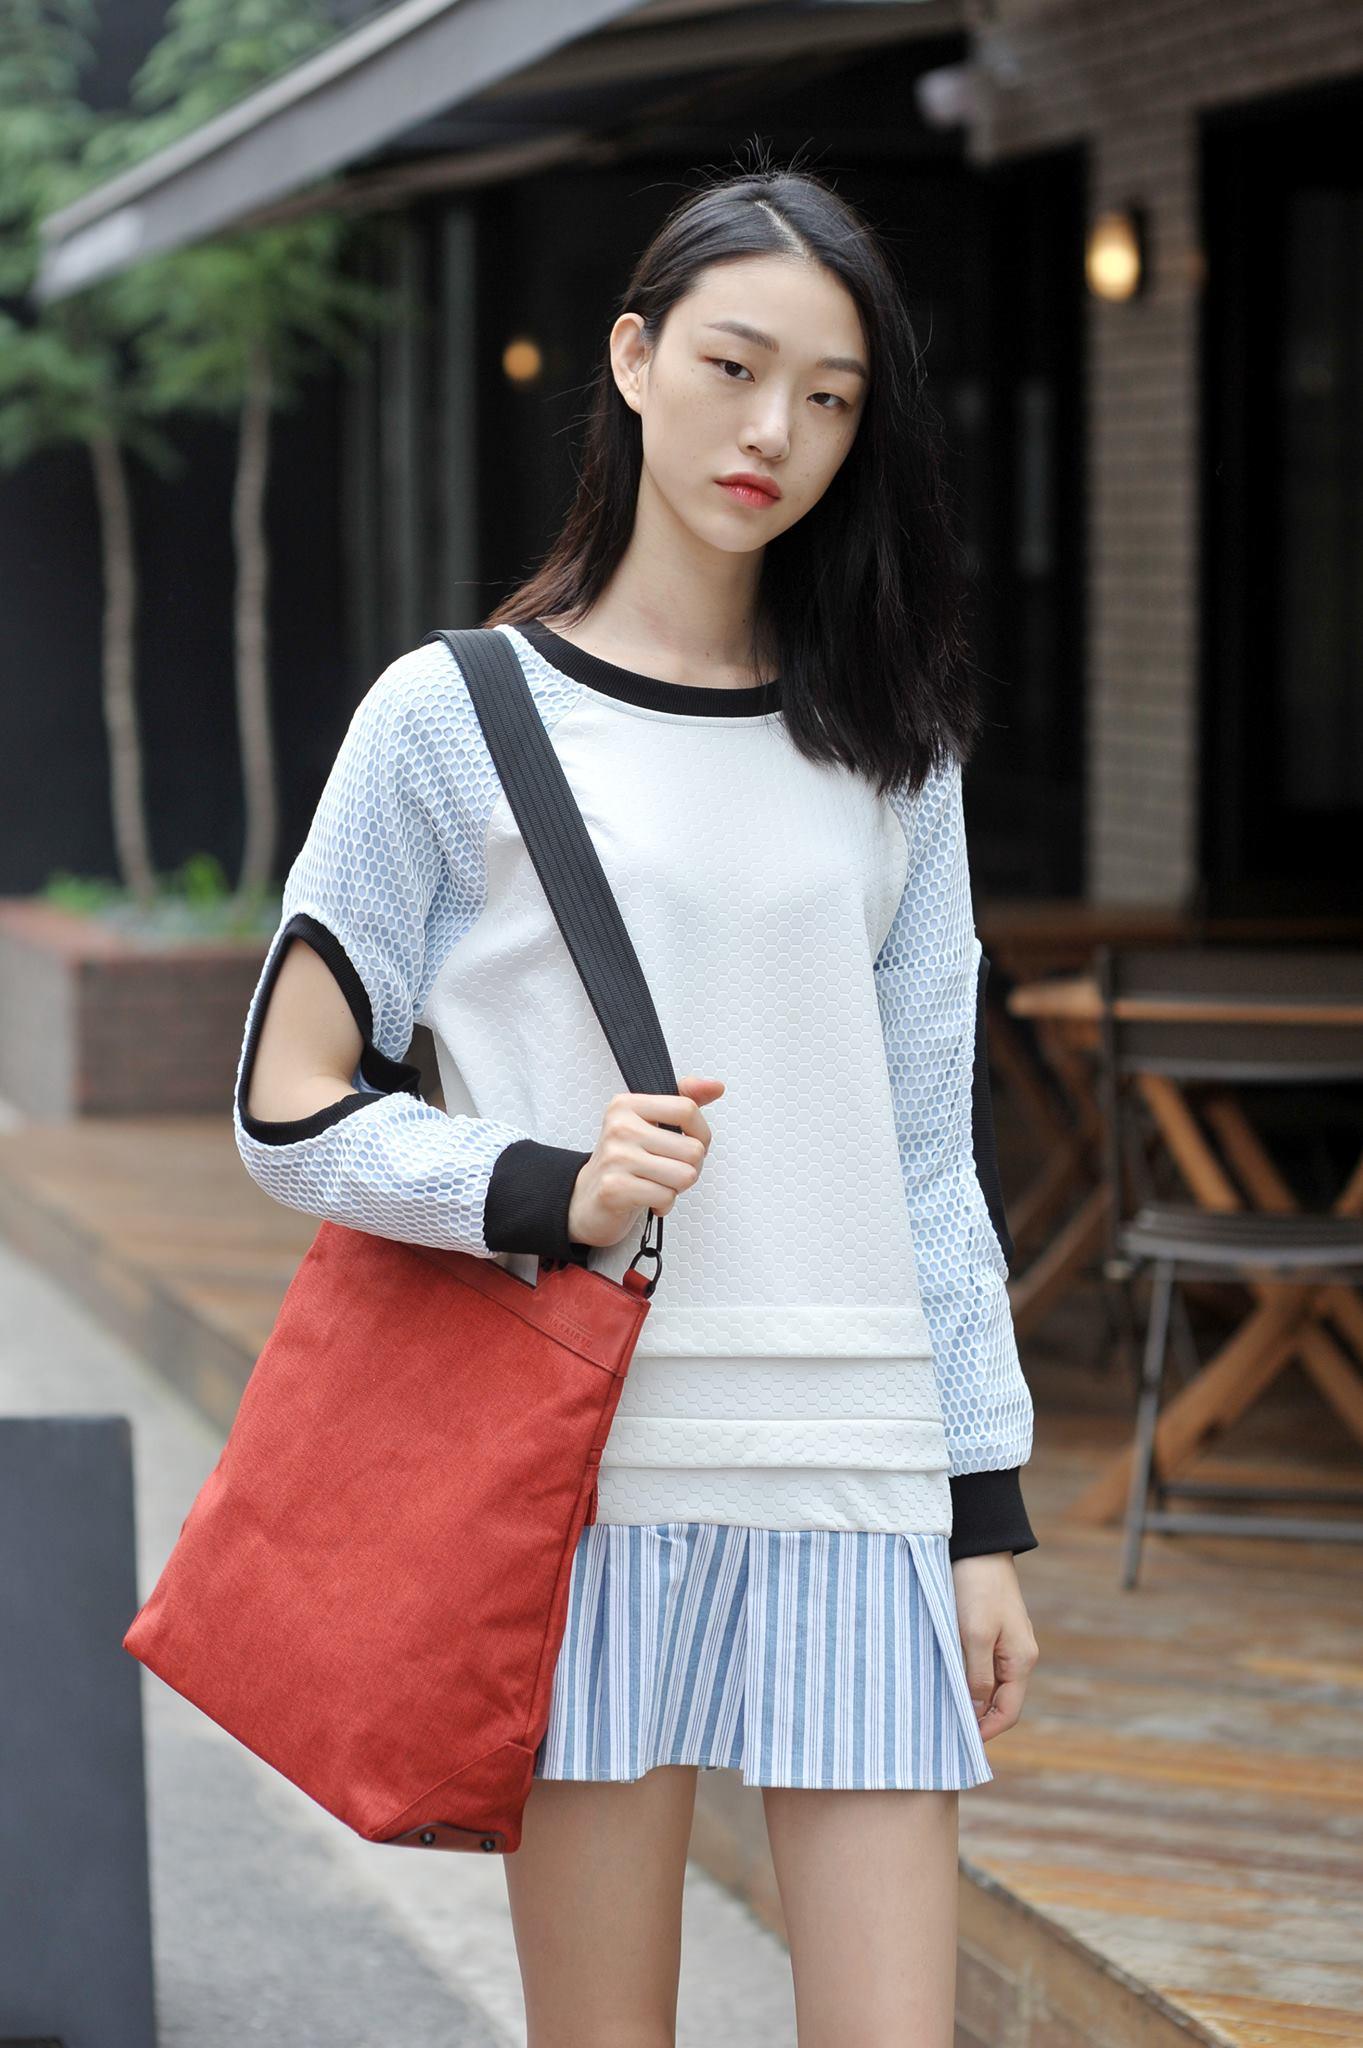 INSPO] I live for this girl. Korean model Sora Choi : r/streetwear